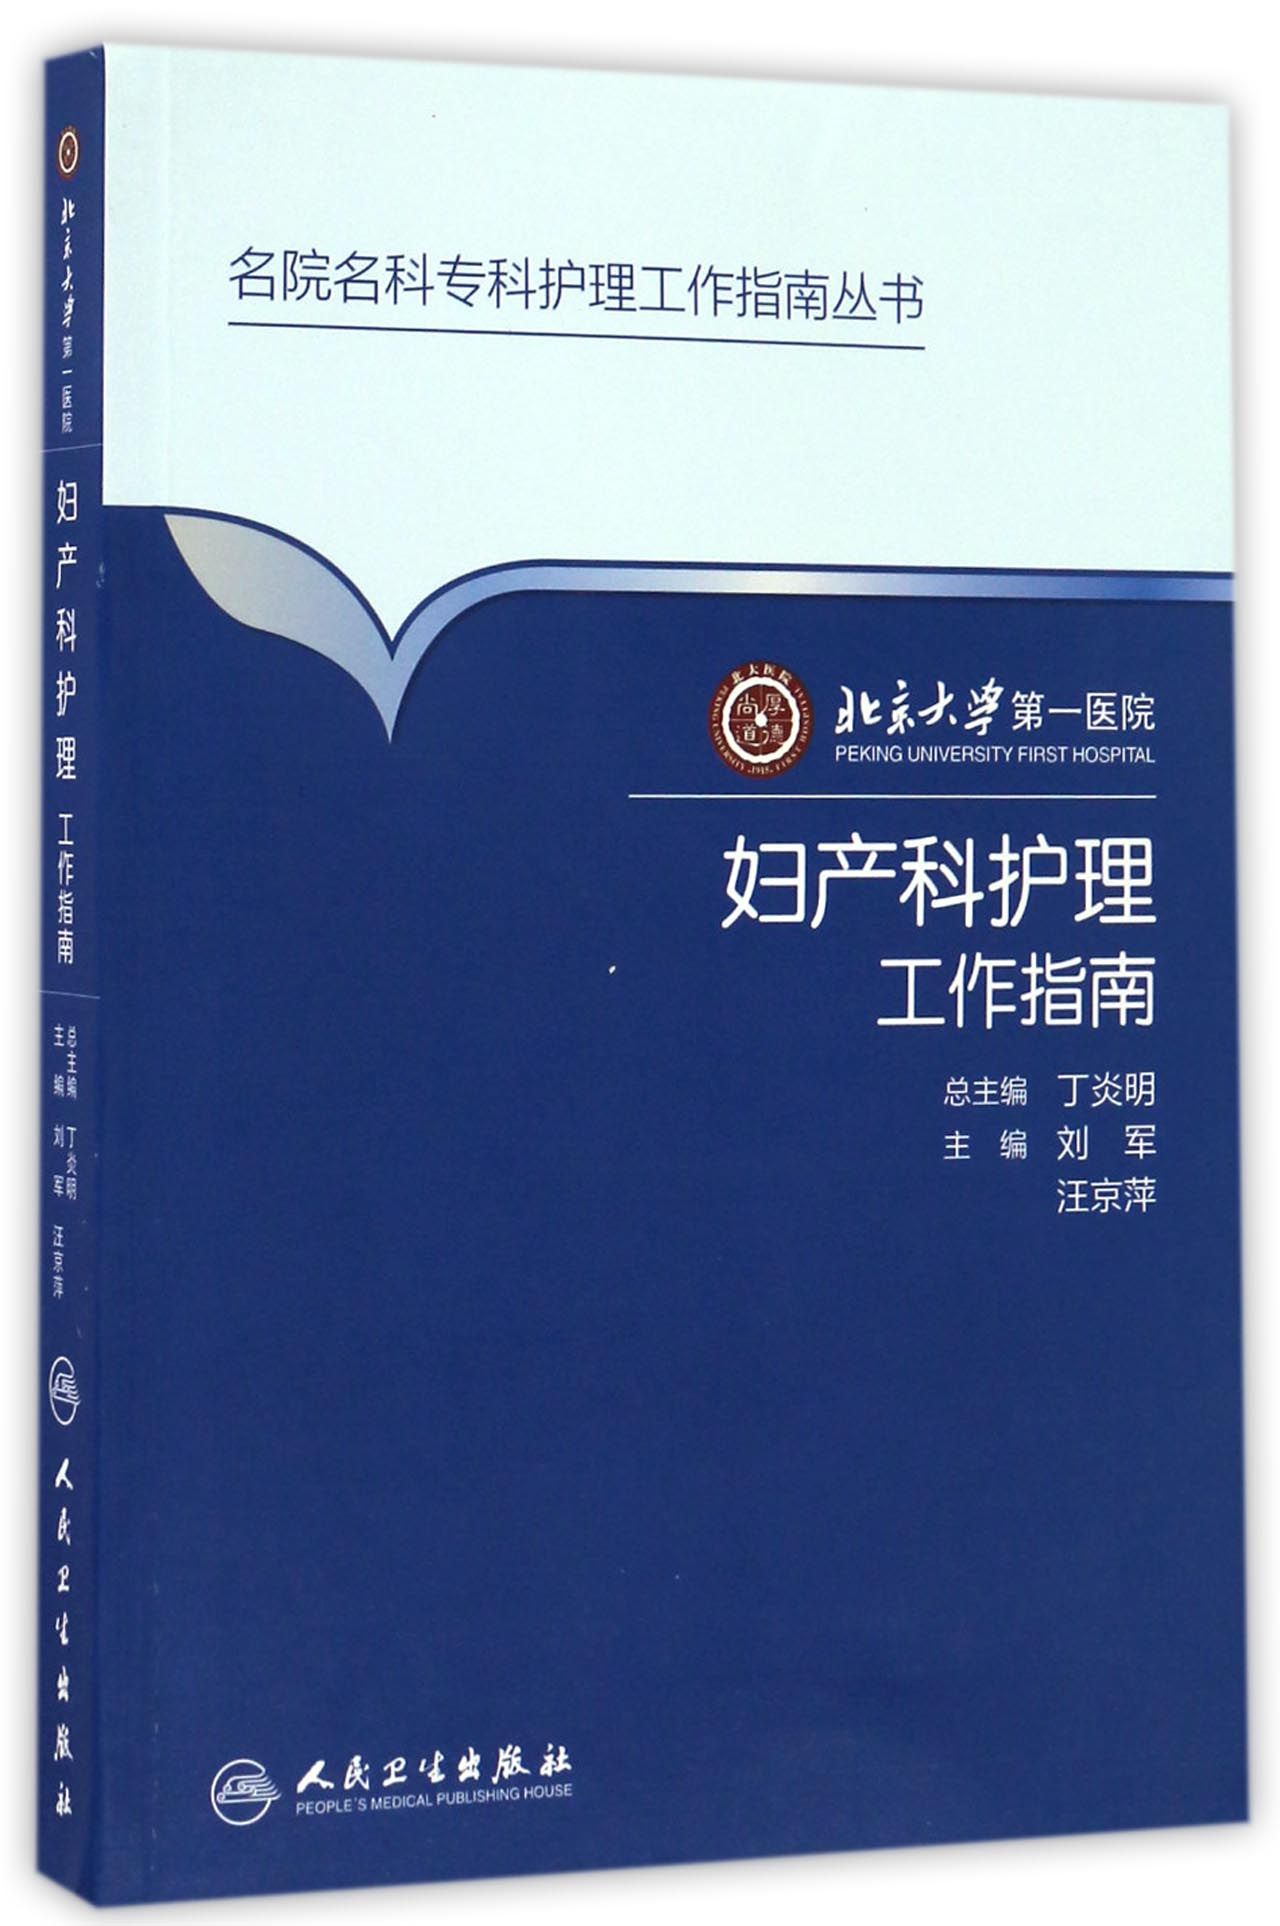 北京大学第一医院妇产科护理工作指南 kindle格式下载